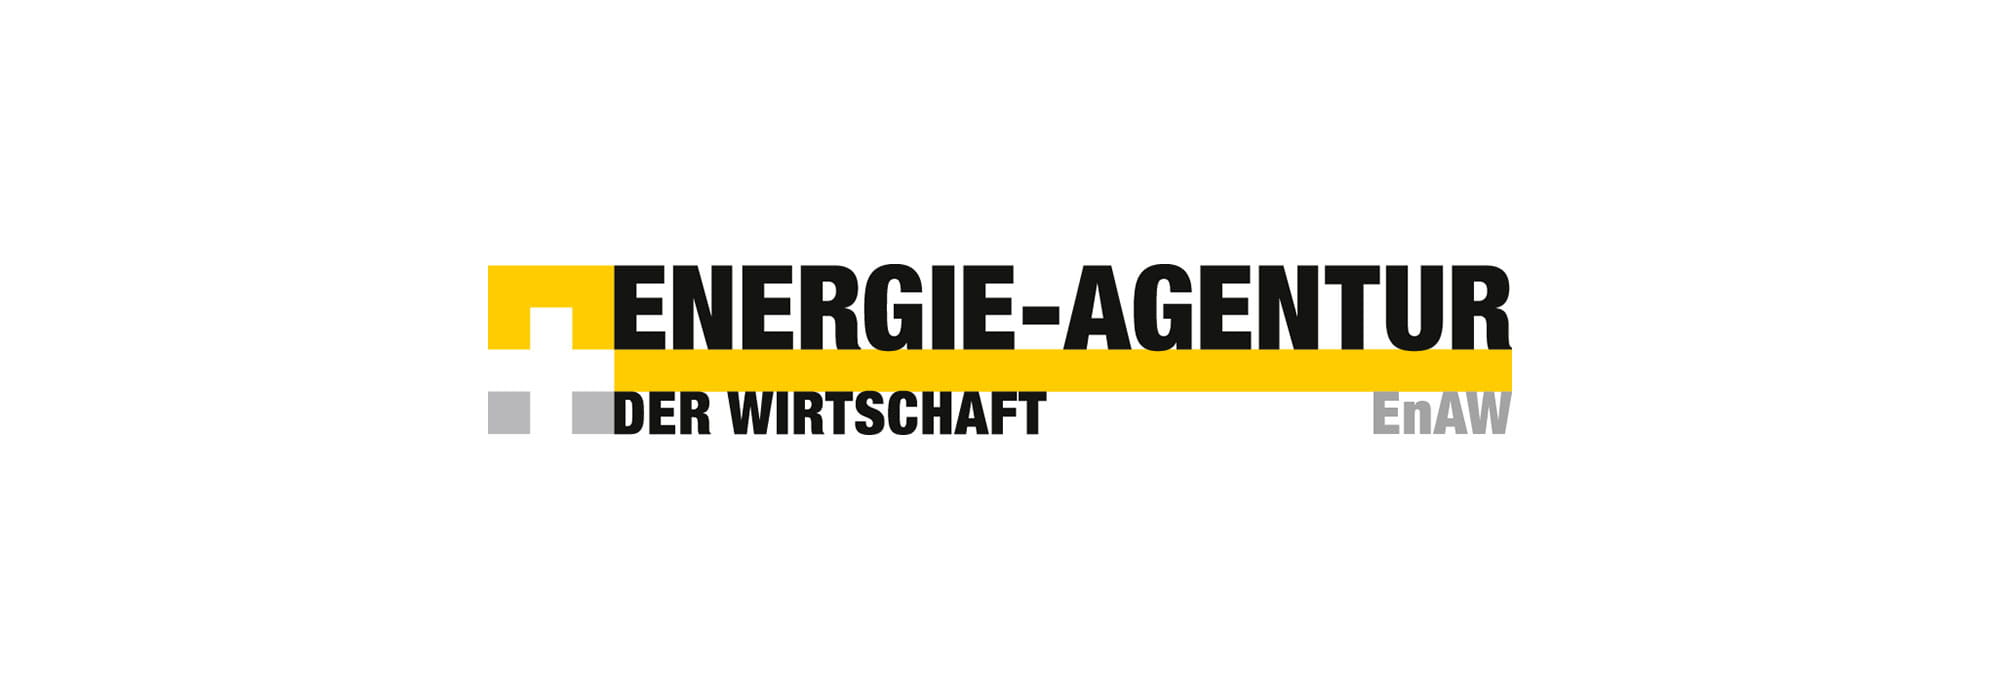 Logo: Energie-Agentur der Wirtschaft 